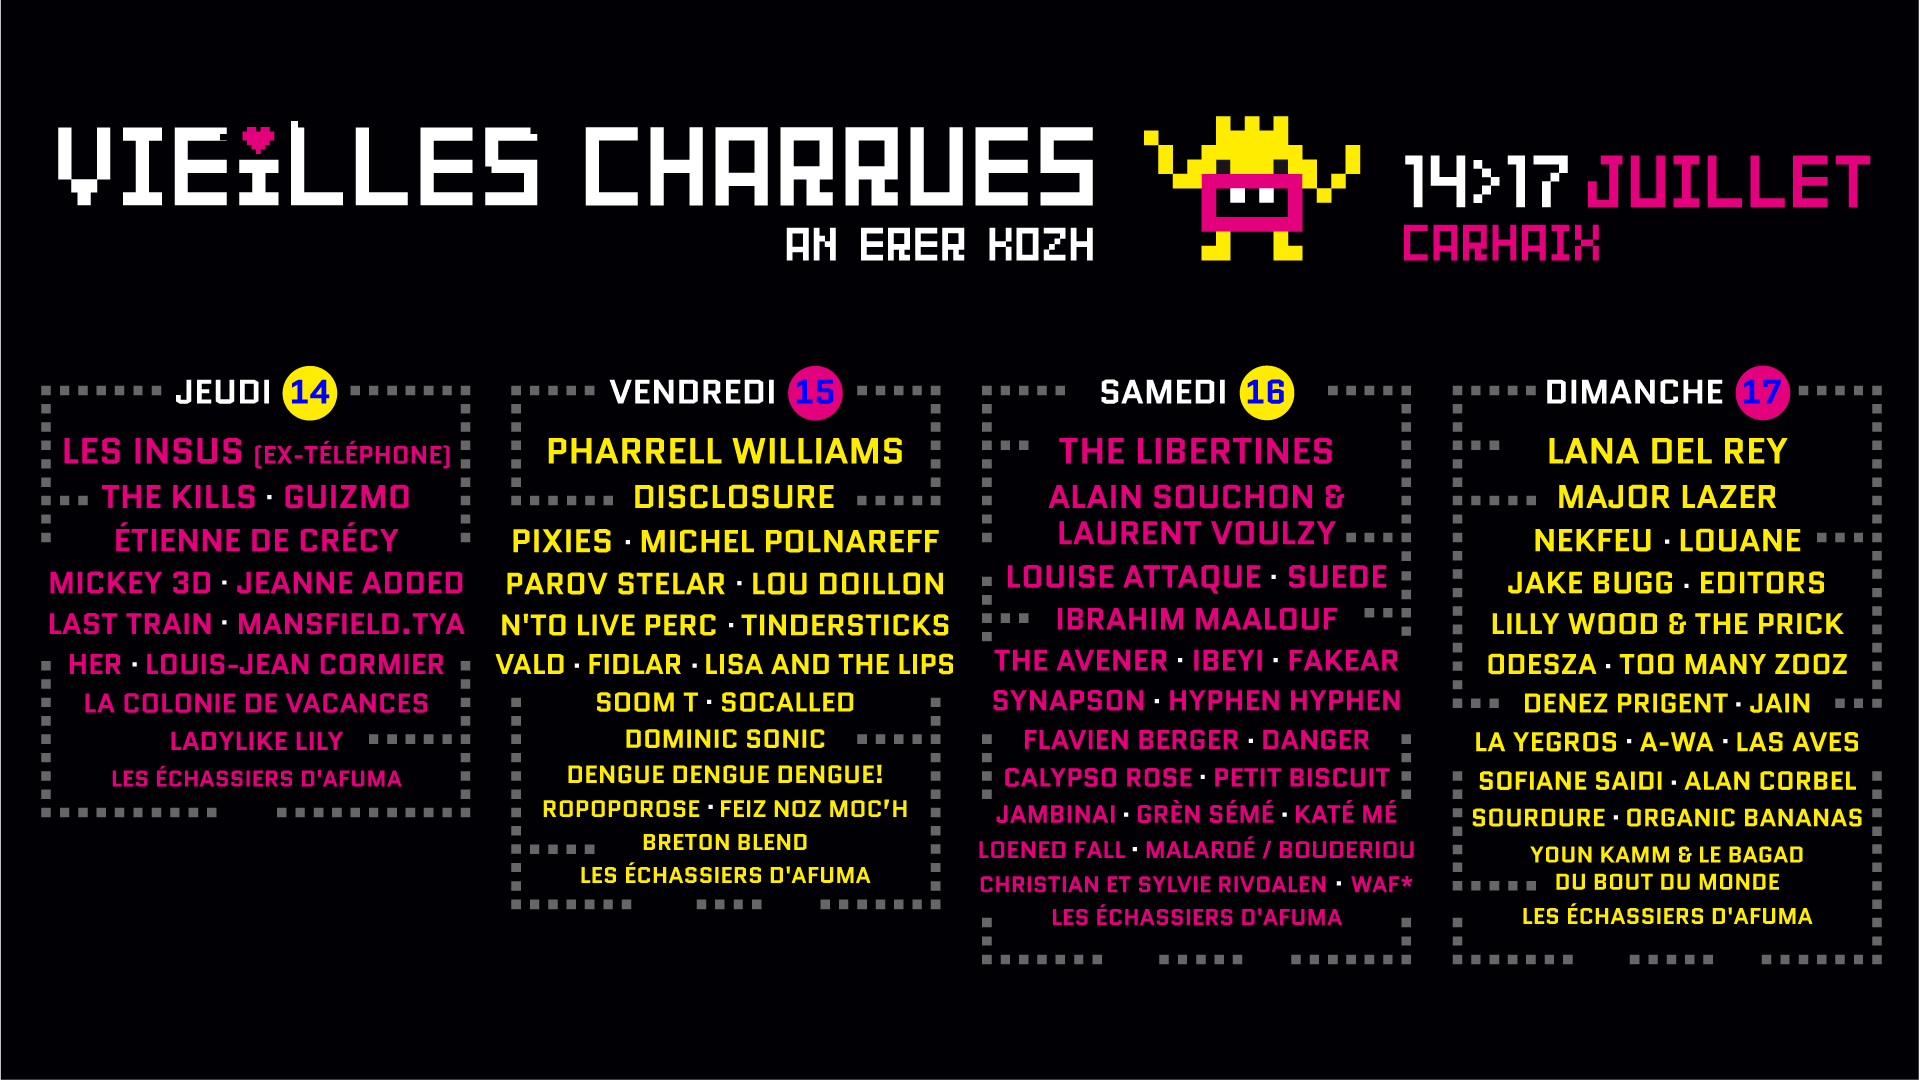 Cartel completo del Vieilles Charrues 2016